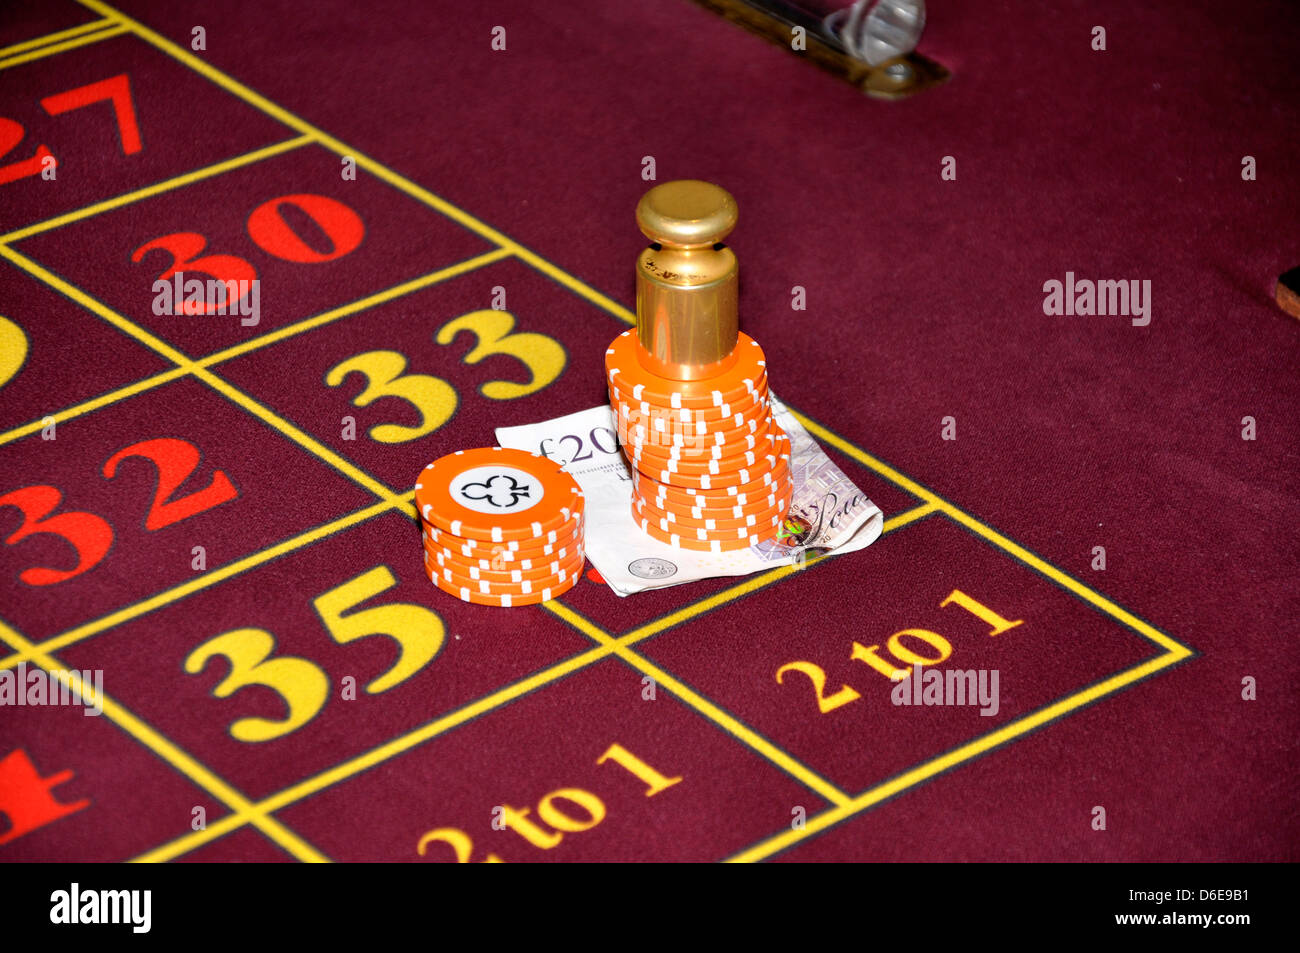 25 de los juegos de palabras de juego de casino online más punzantes que puedes encontrar